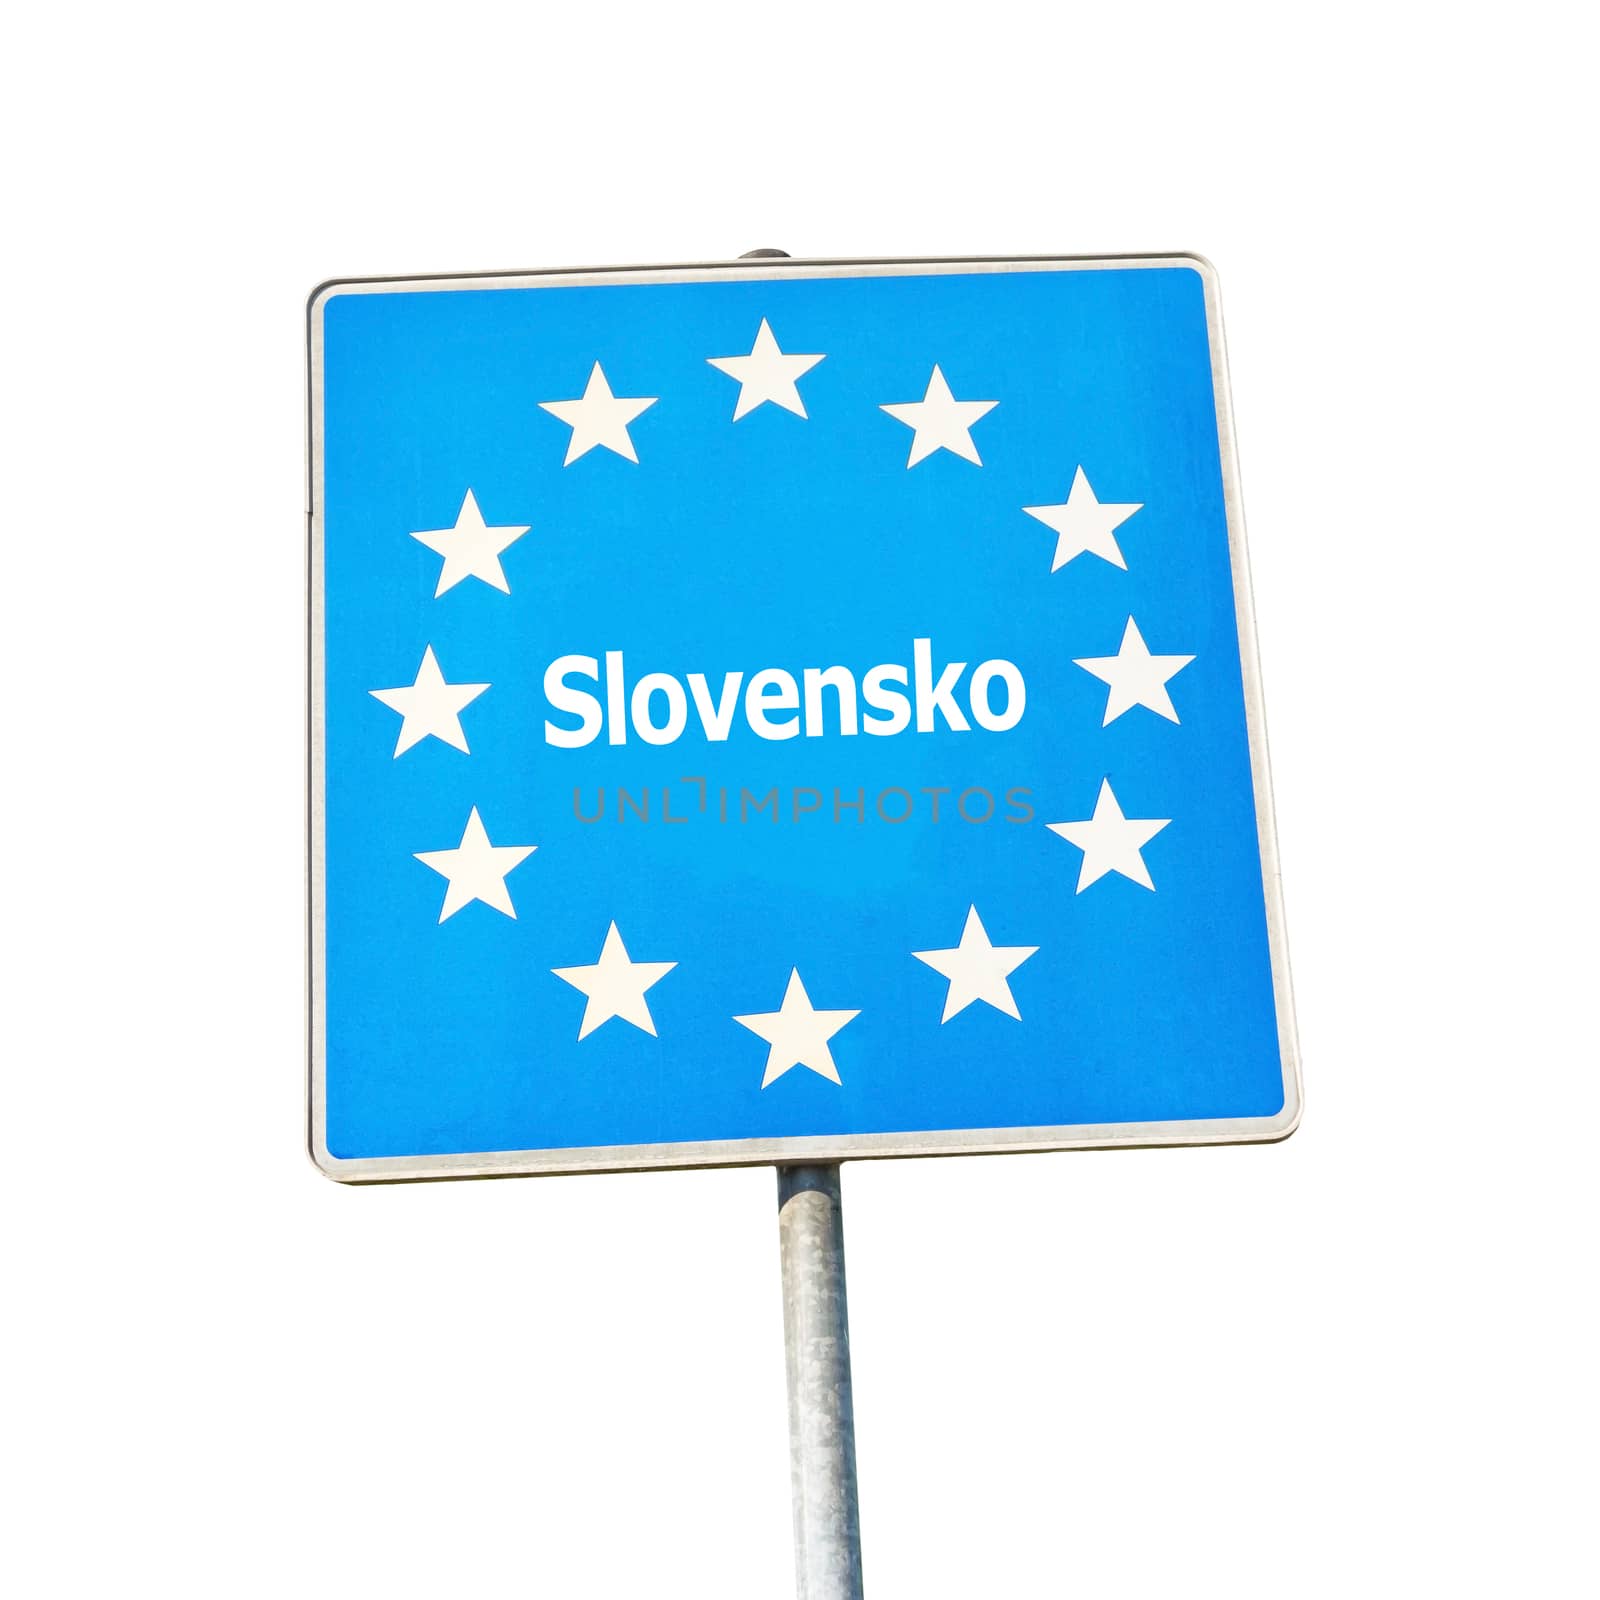 Border sign of slovakia, europe - isolated on white background